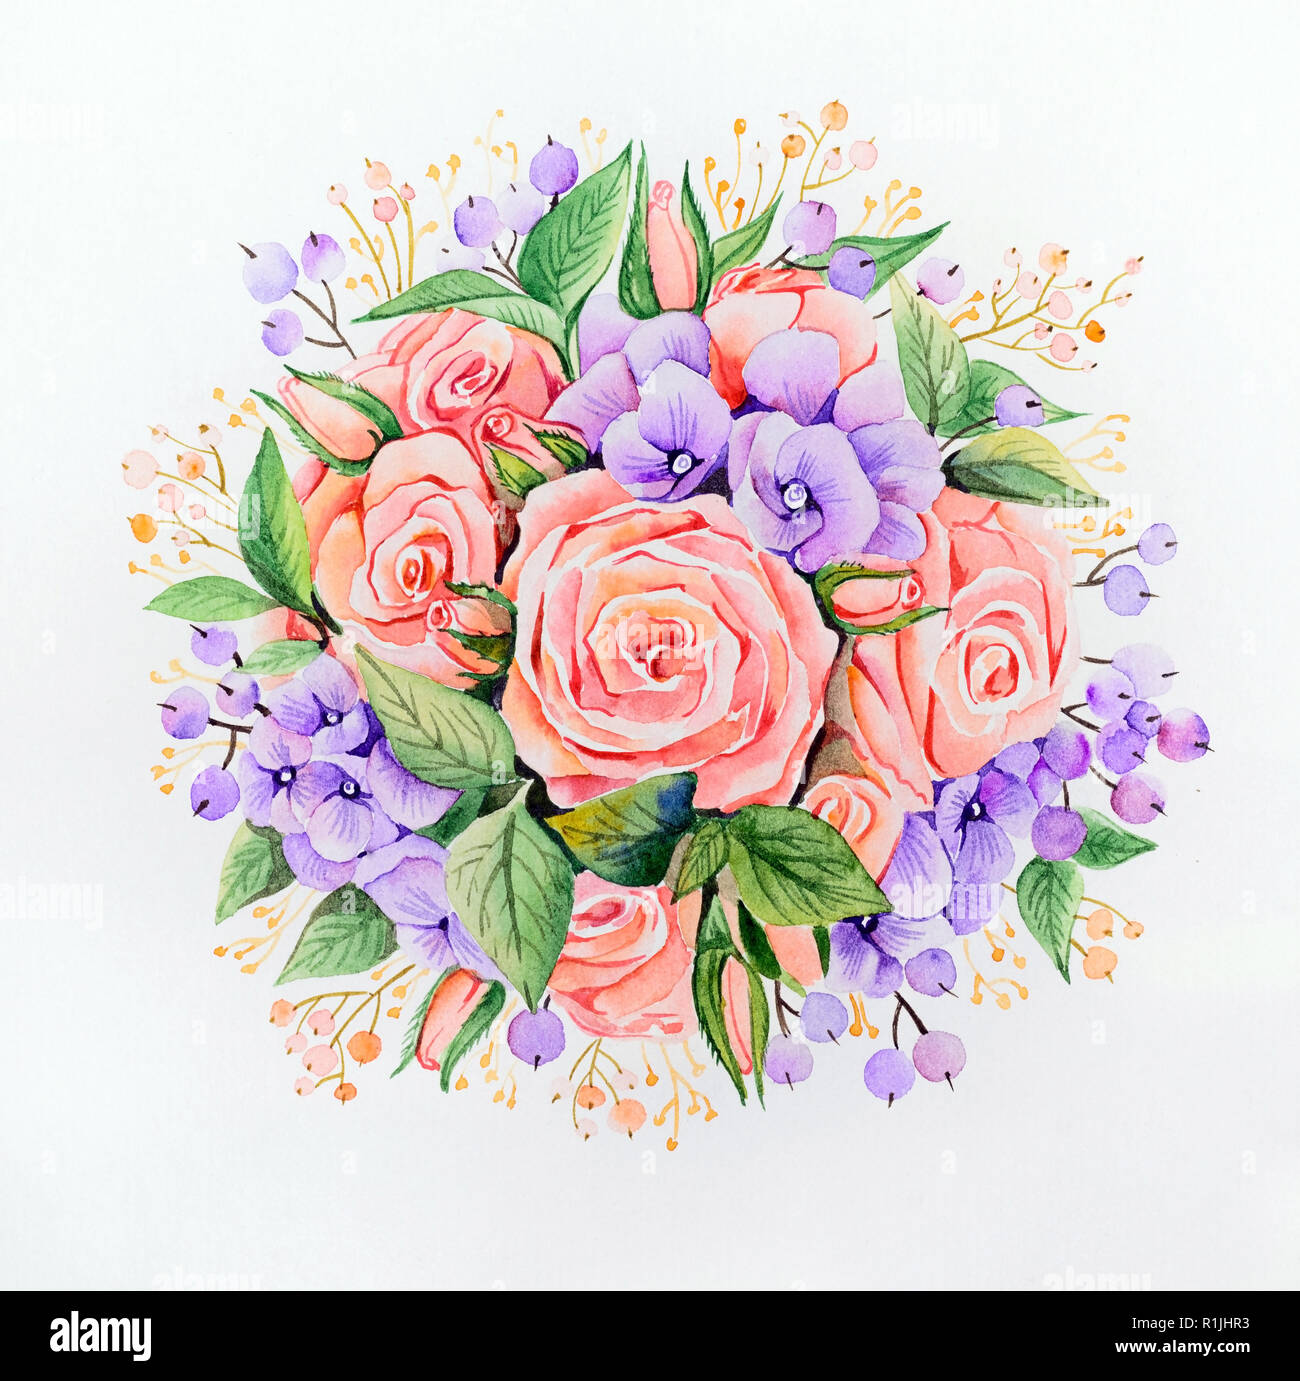 Blumenstrauß in der Form einer Kugel, links von Rosen und Flieder Hortensien und mit verschiedenen Arten von grünen Blättern dekoriert Stockfoto